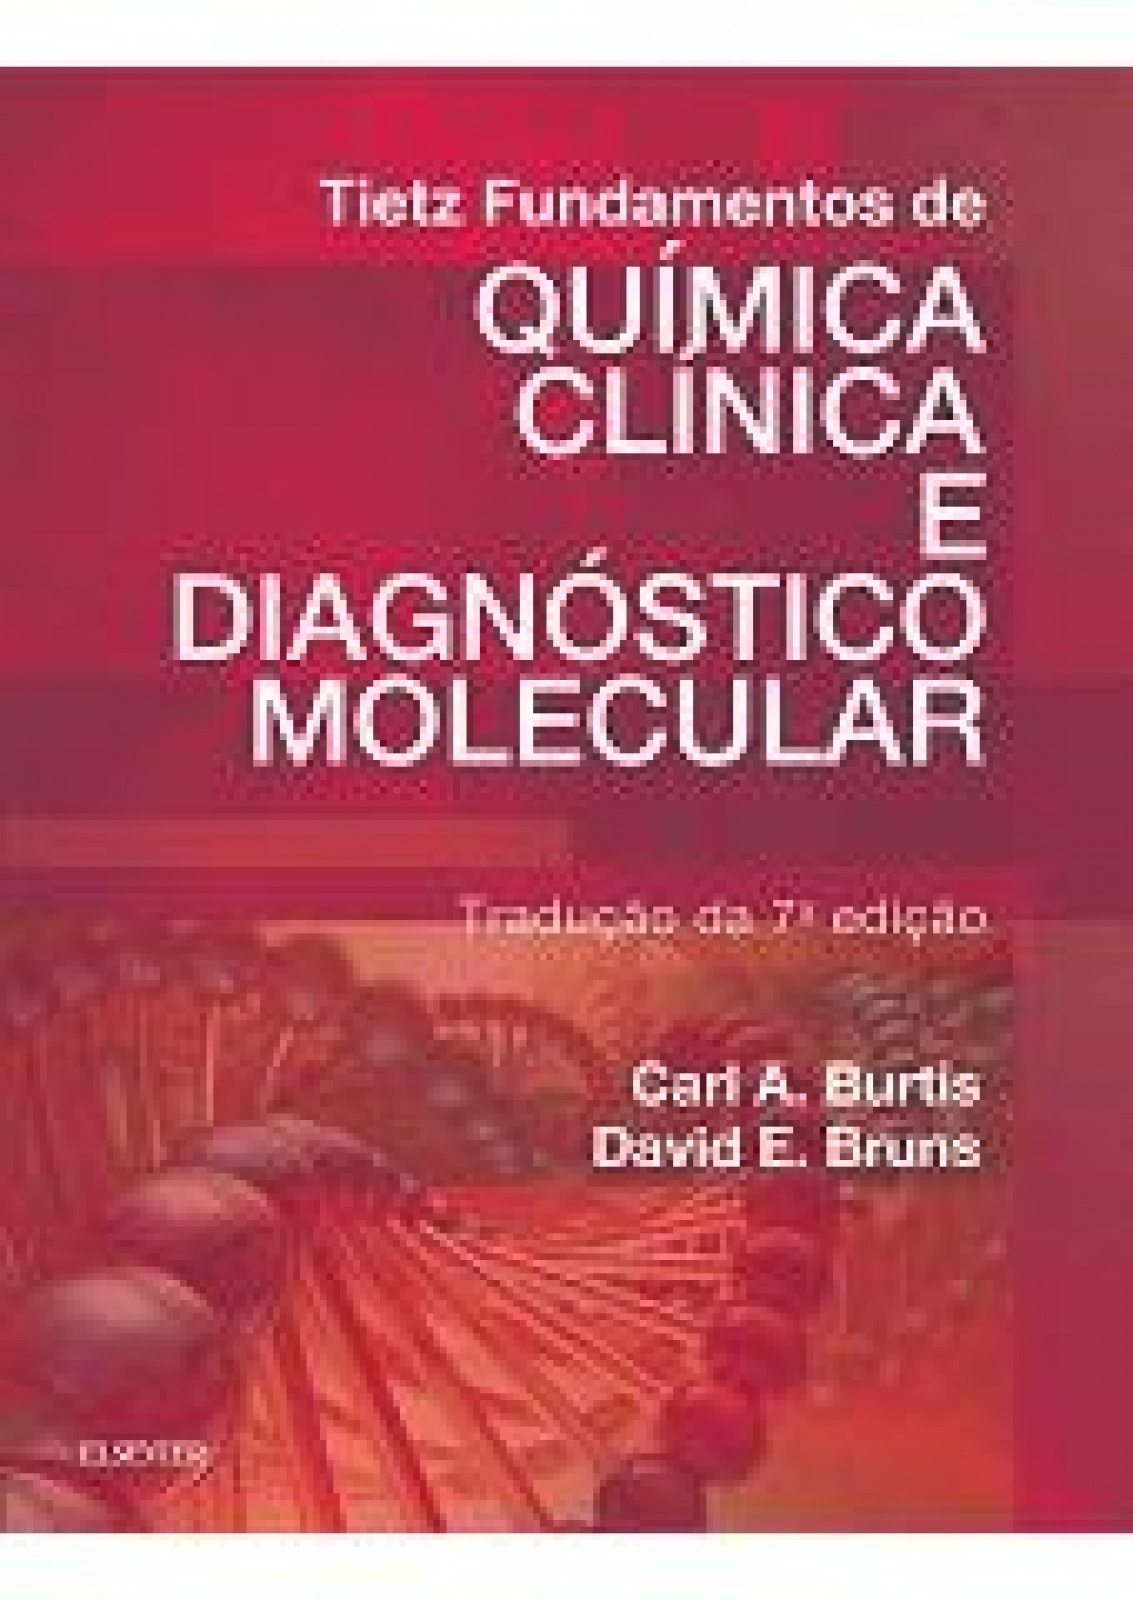 Tietz Fundamentos De Quimica Clinica E Diagnostico Molecular - 7ª Edição